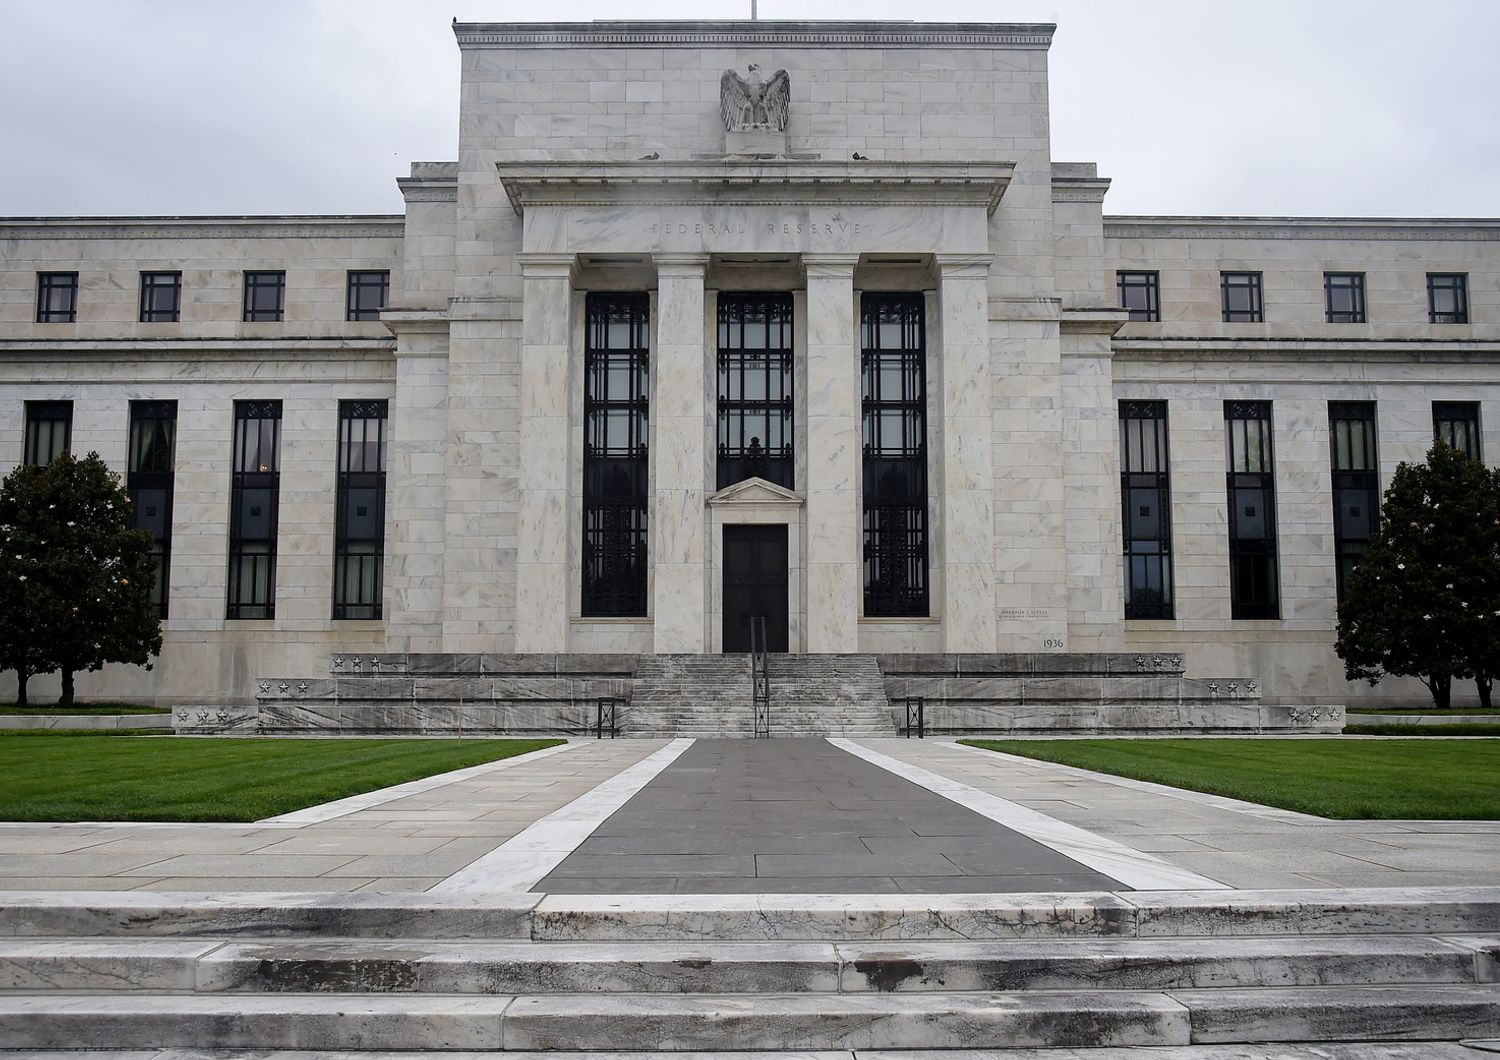 L'edificio della Federal Reserve a Washington&nbsp;